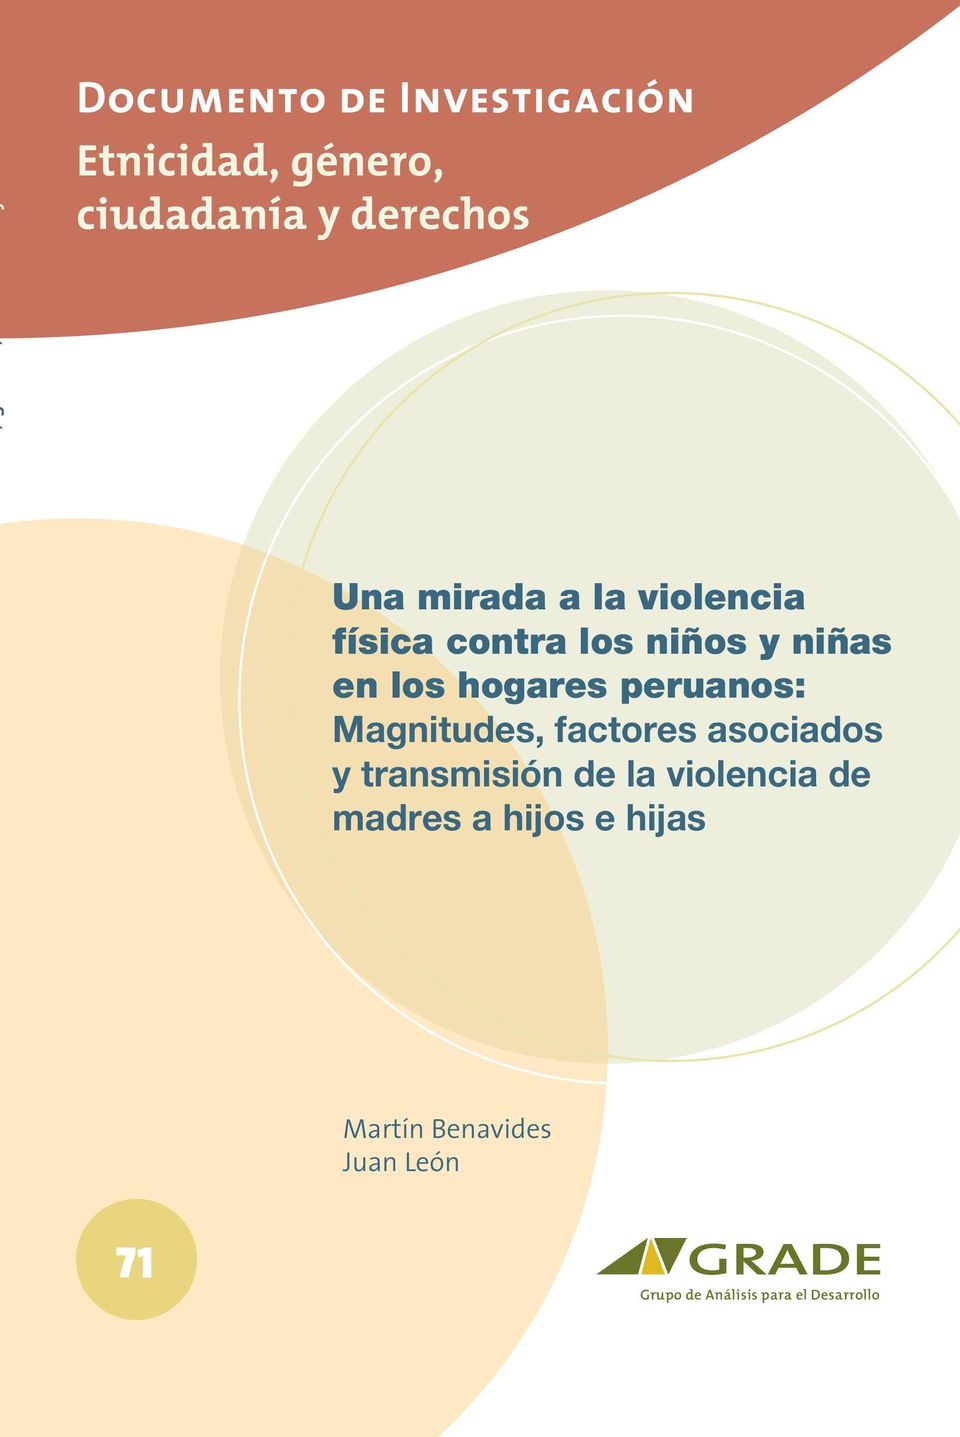 peruanos: Magnitudes, factores asociados y transmisión de la violencia de